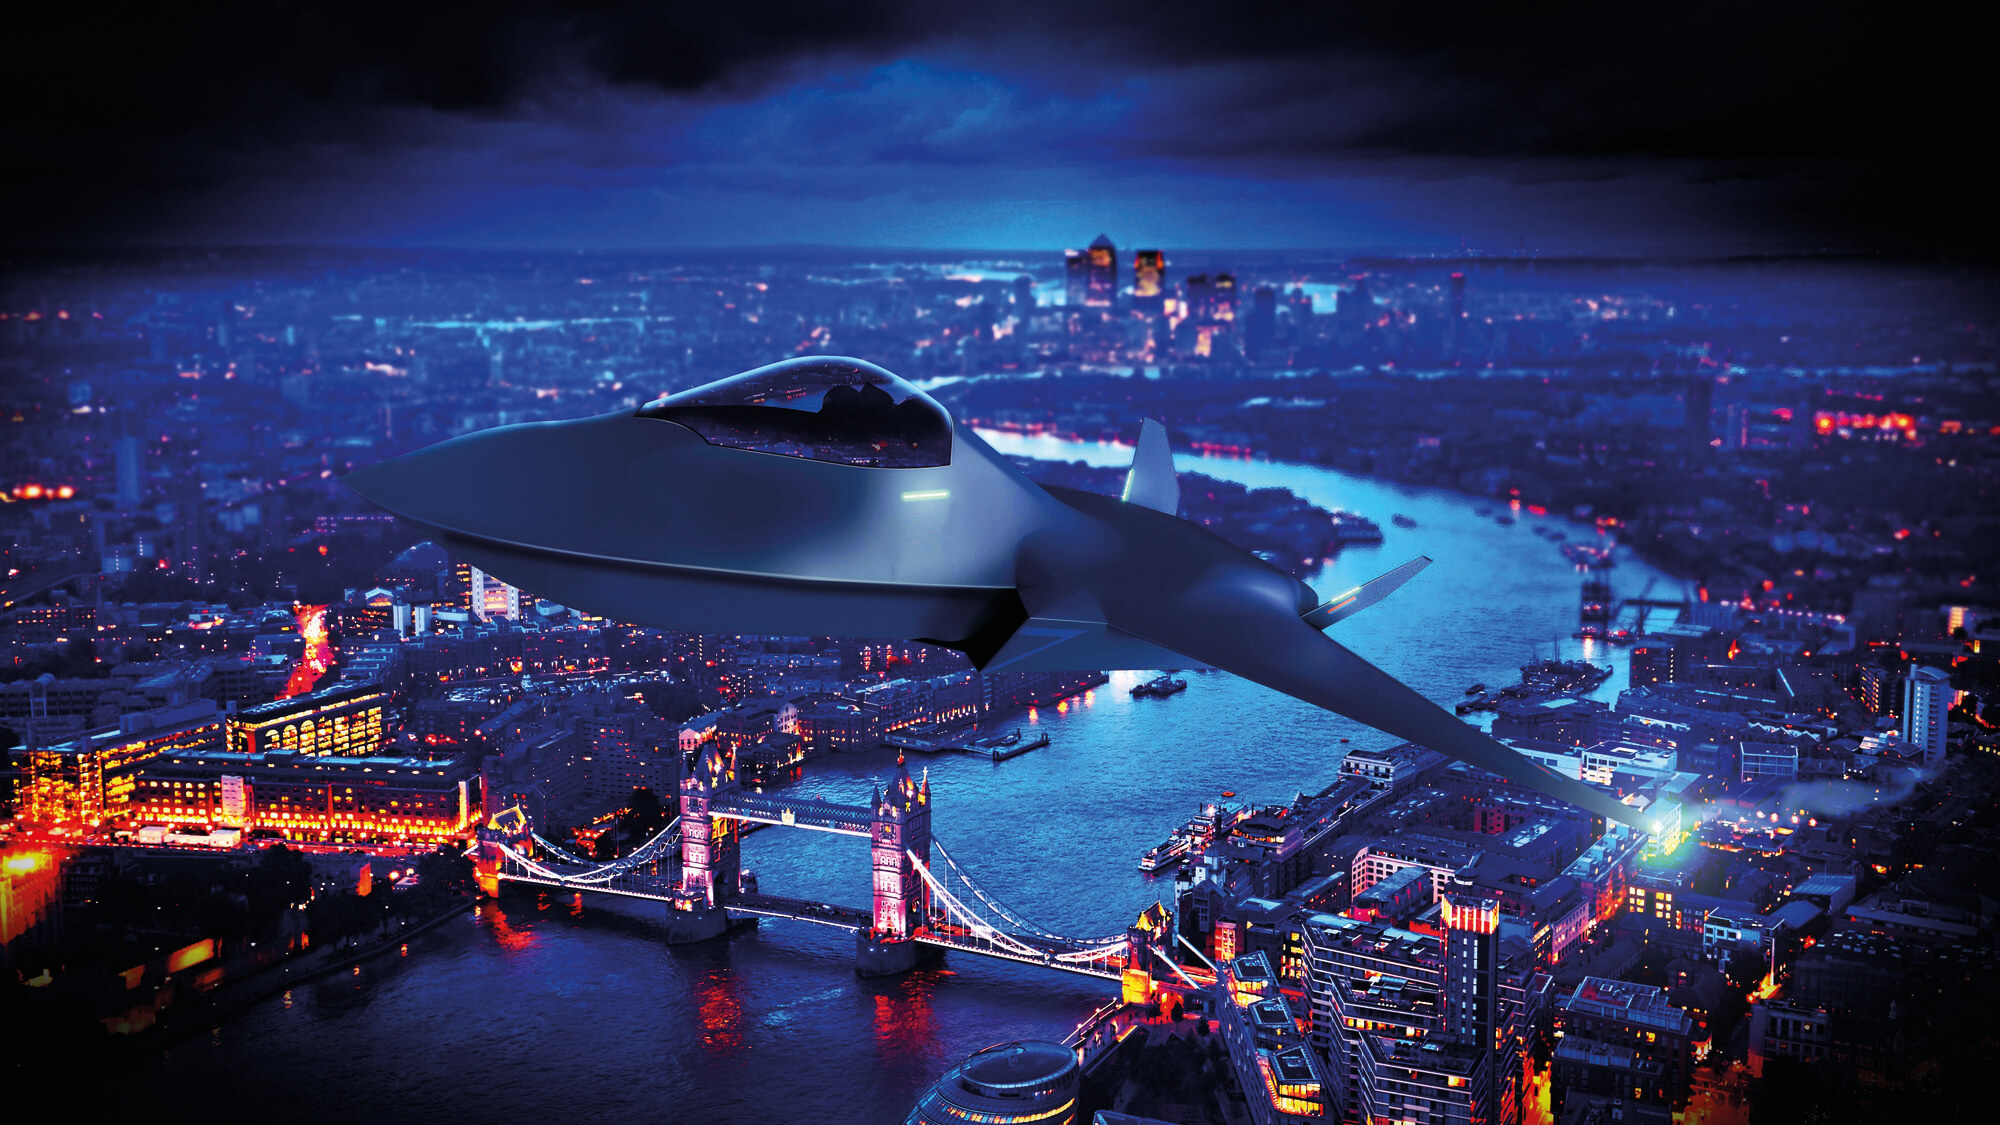 Görüntü, geceleri Londra üzerinde uçan bir Future Combat Air System'in grafiğini gösteriyor.